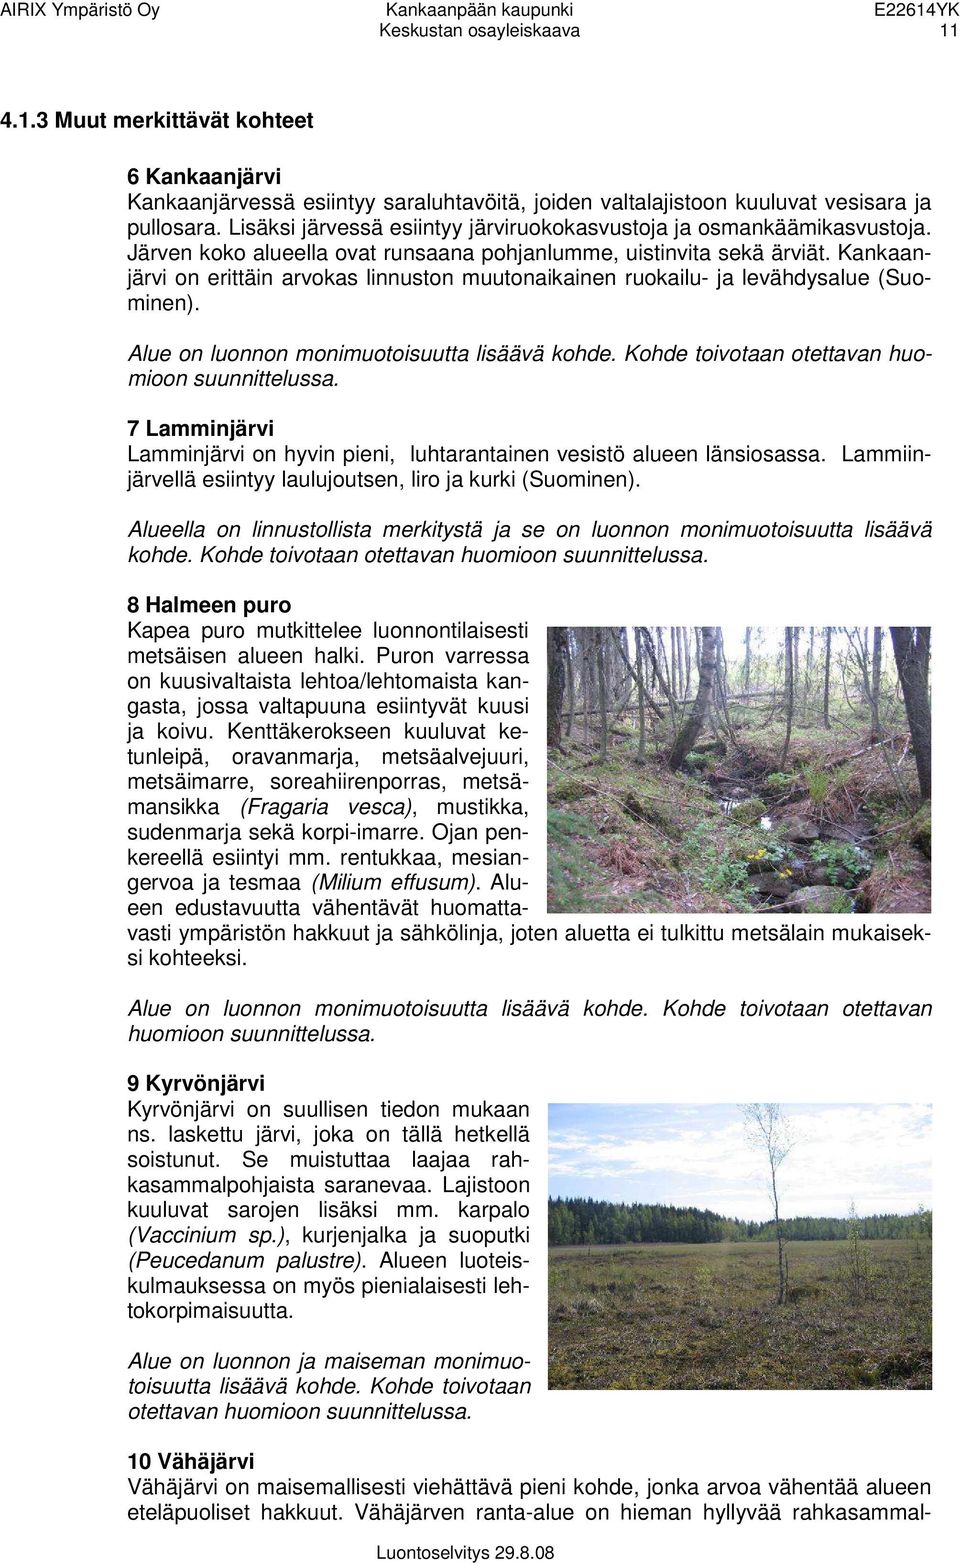 Kankaanjärvi on erittäin arvokas linnuston muutonaikainen ruokailu- ja levähdysalue (Suominen). Alue on luonnon monimuotoisuutta lisäävä kohde. Kohde toivotaan otettavan huomioon suunnittelussa.